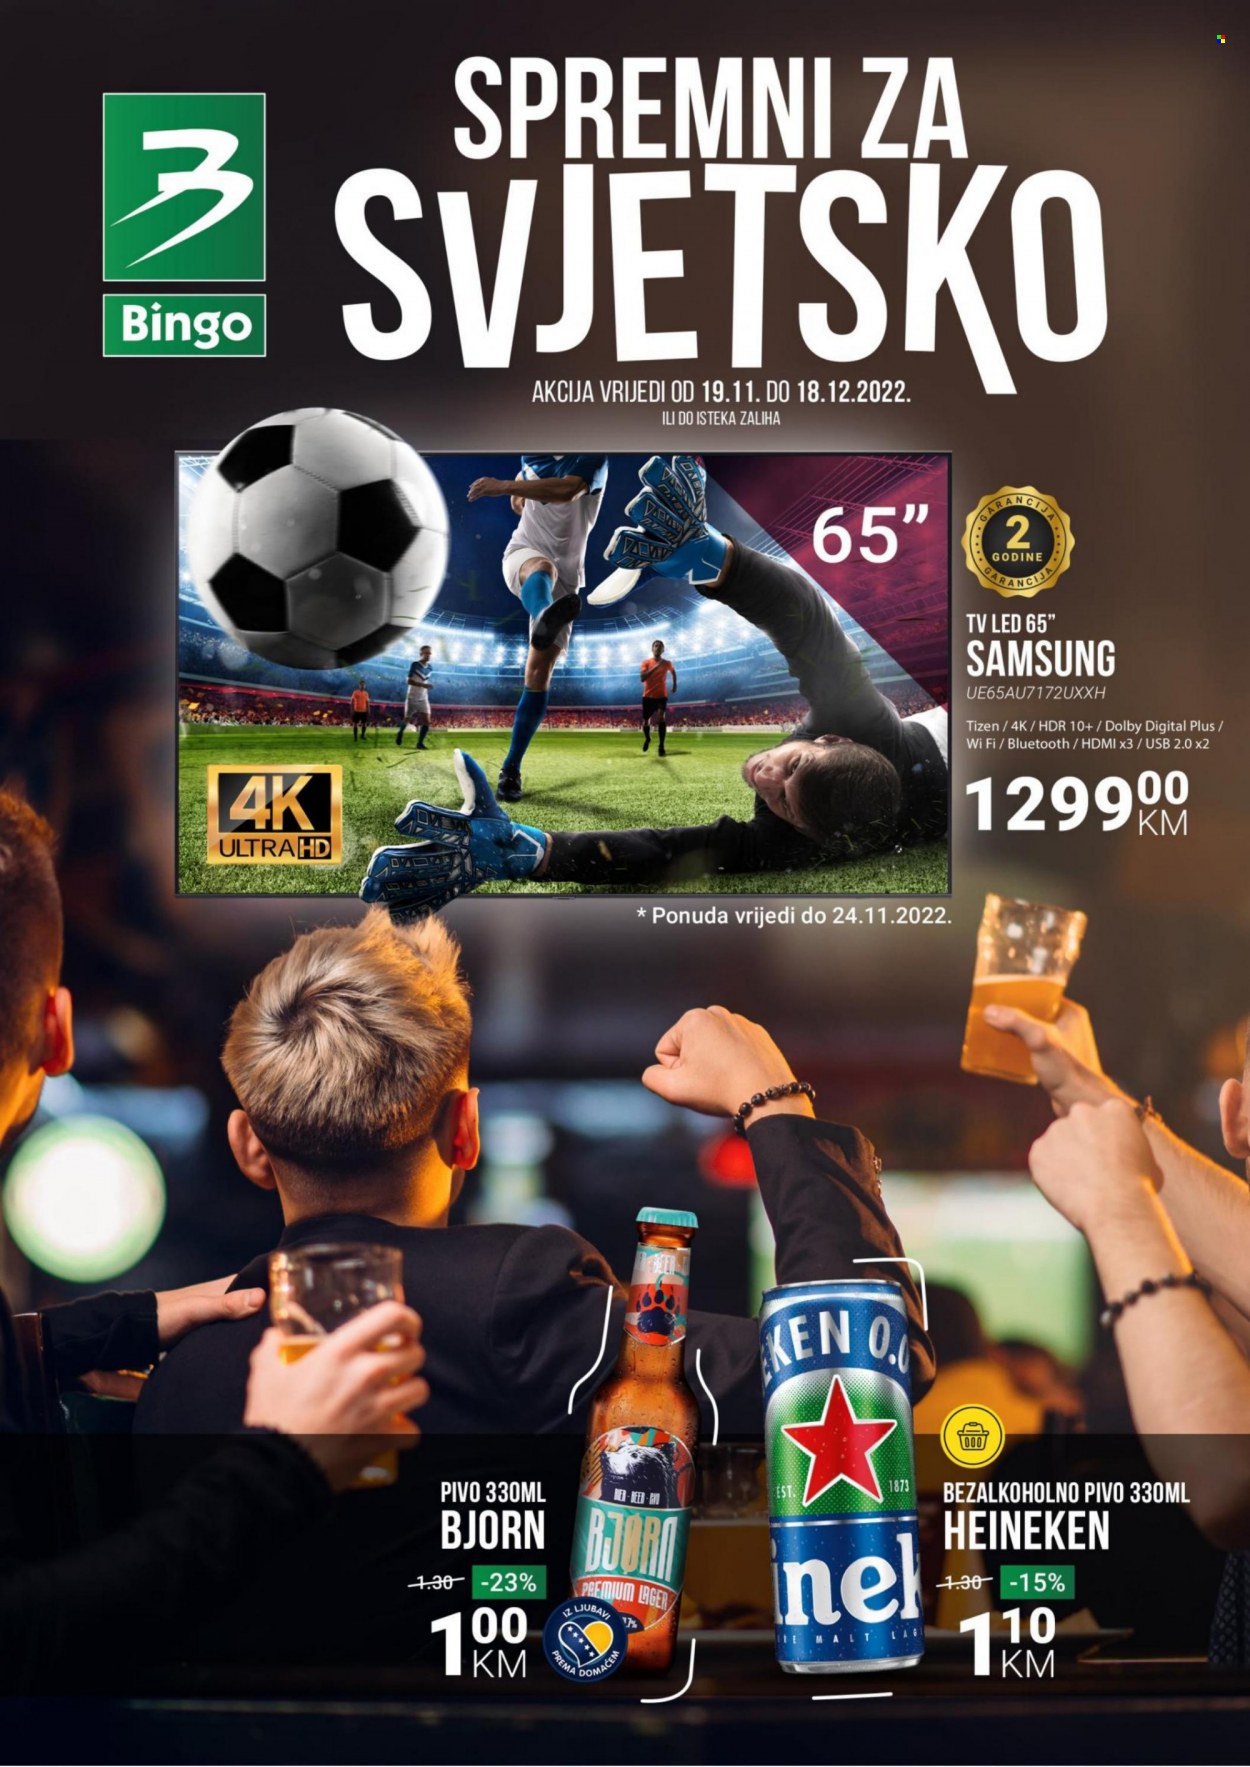 Bingo katalog - 19.11.2022. - 18.12.2022. - Sniženi proizvodi - pivo Heineken, pivo, bezalkoholno pivo, led, Samsung. Stranica 1.